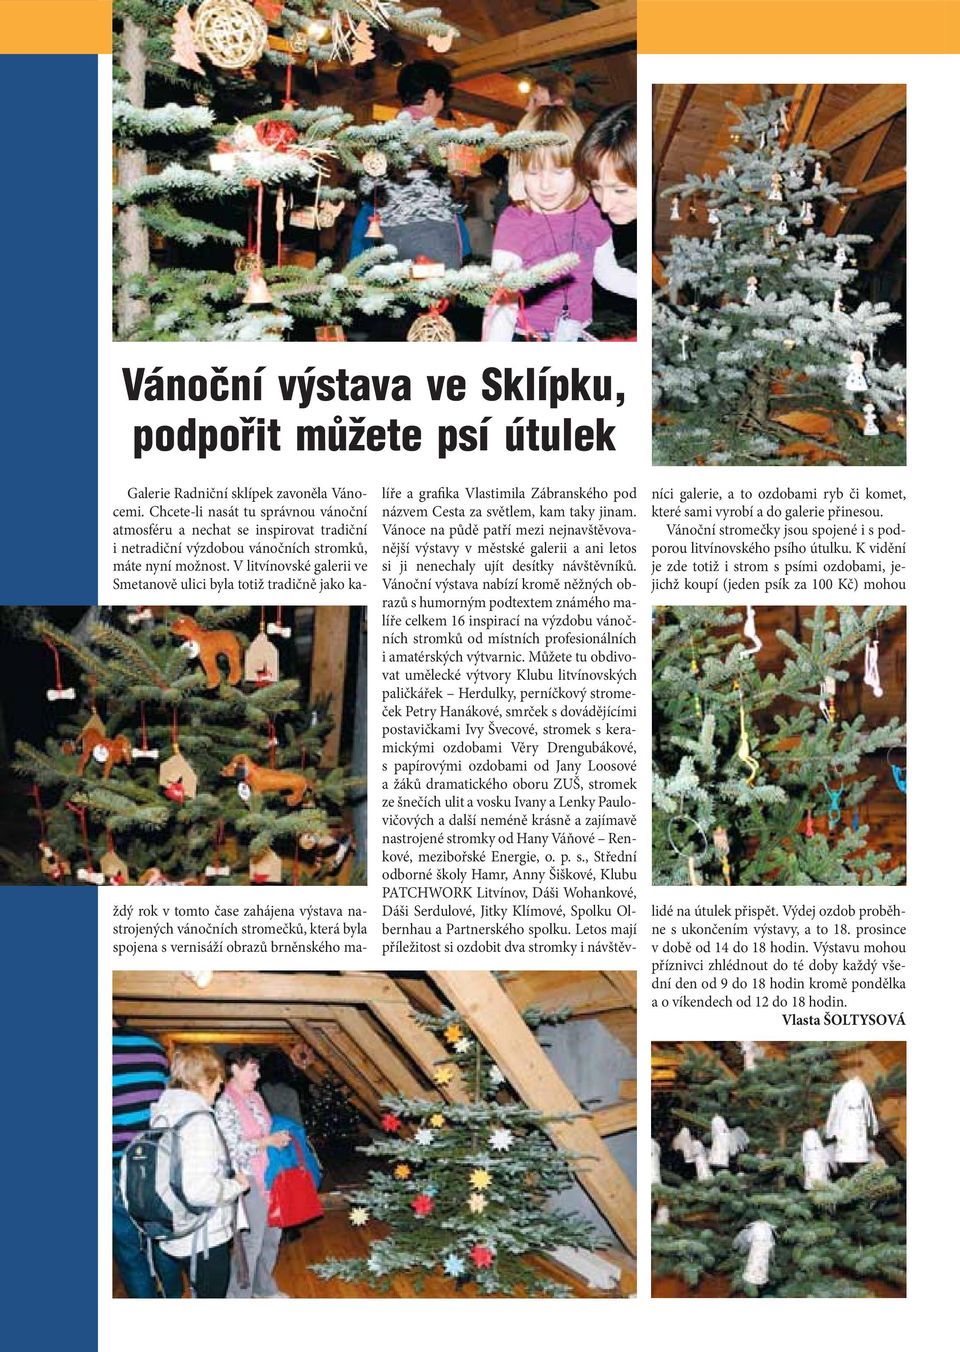 V litvínovské galerii ve Smetanově ulici byla totiž tradičně jako každý rok v tomto čase zahájena výstava nastrojených vánočních stromečků, která byla spojena s vernisáží obrazů brněnského malíře a